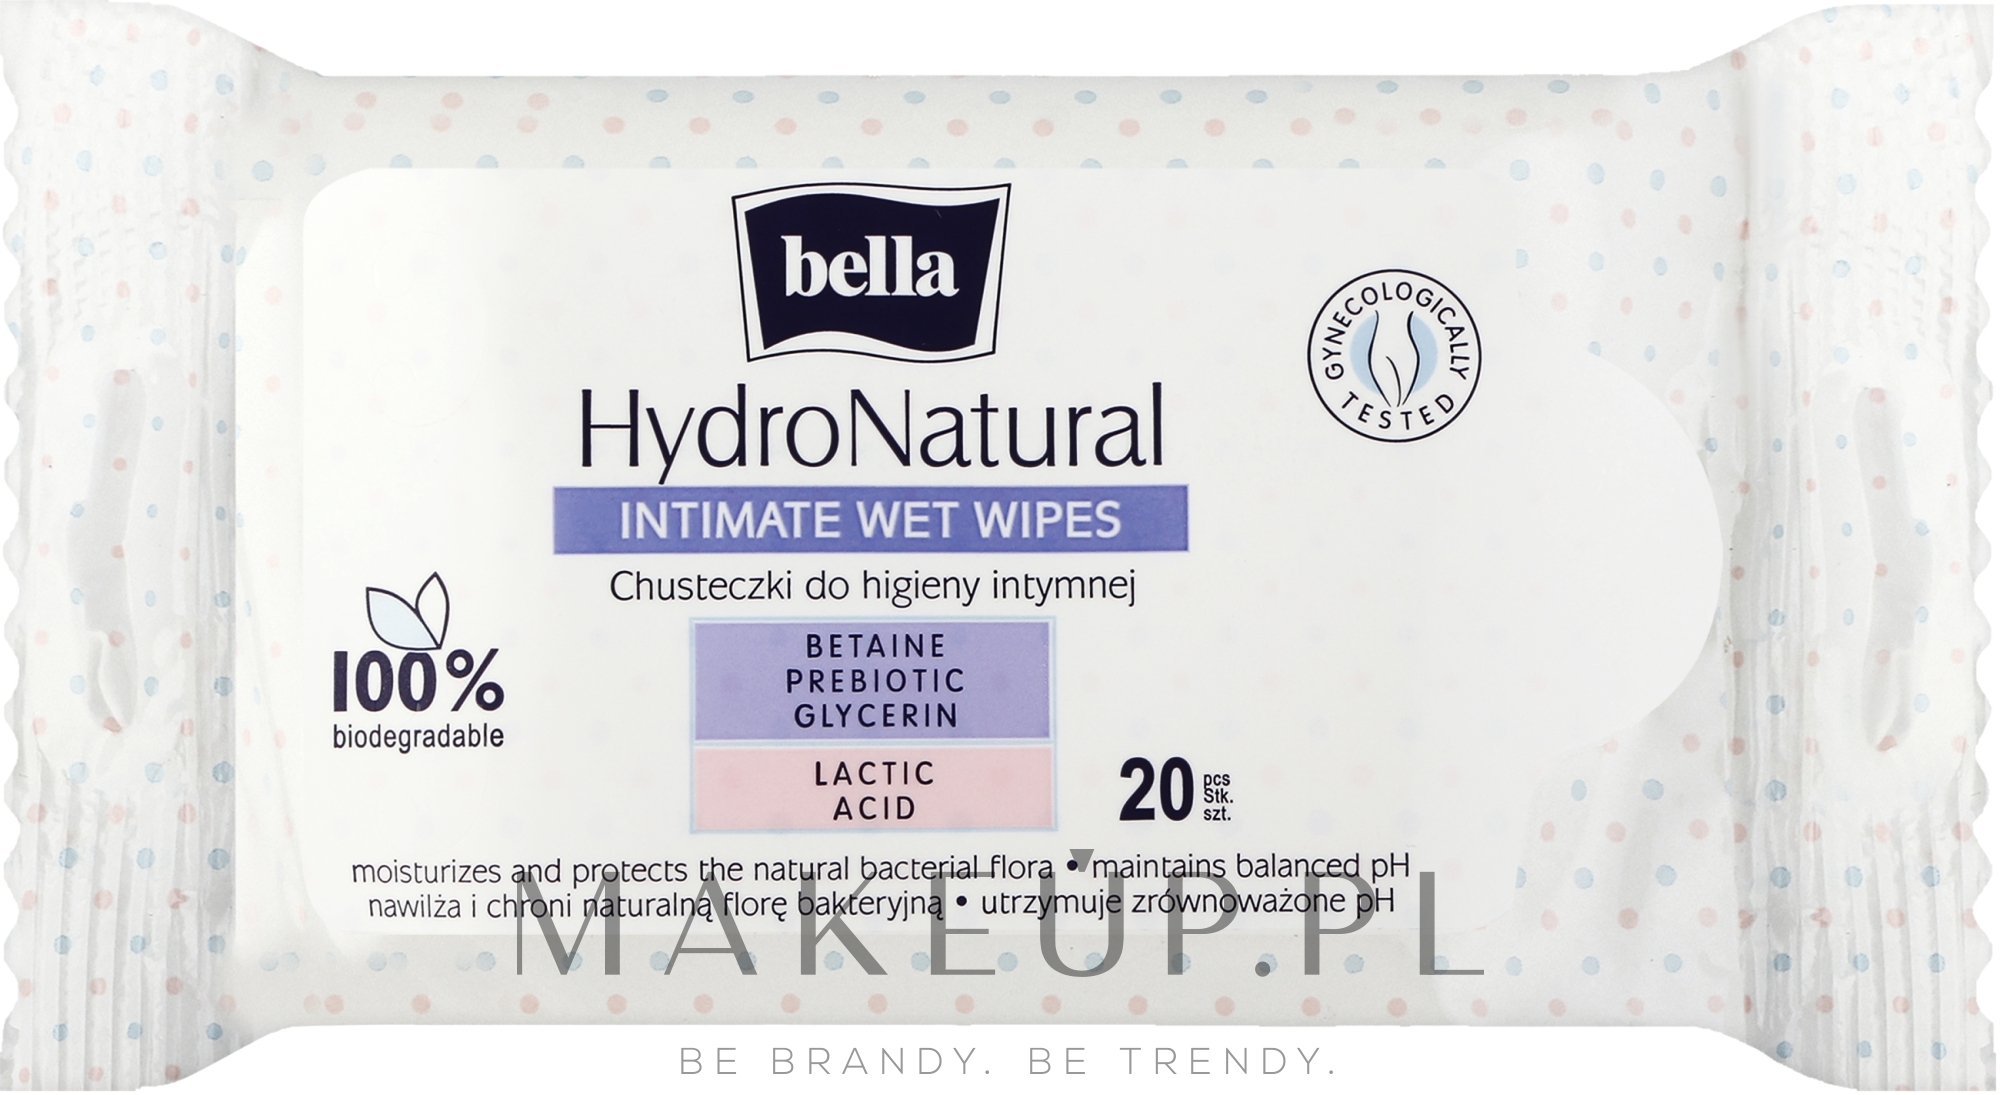 Chusteczki do higieny intymnej, 20 szt. - Bella Hydro Natural Wet Wipes — Zdjęcie 20 szt.